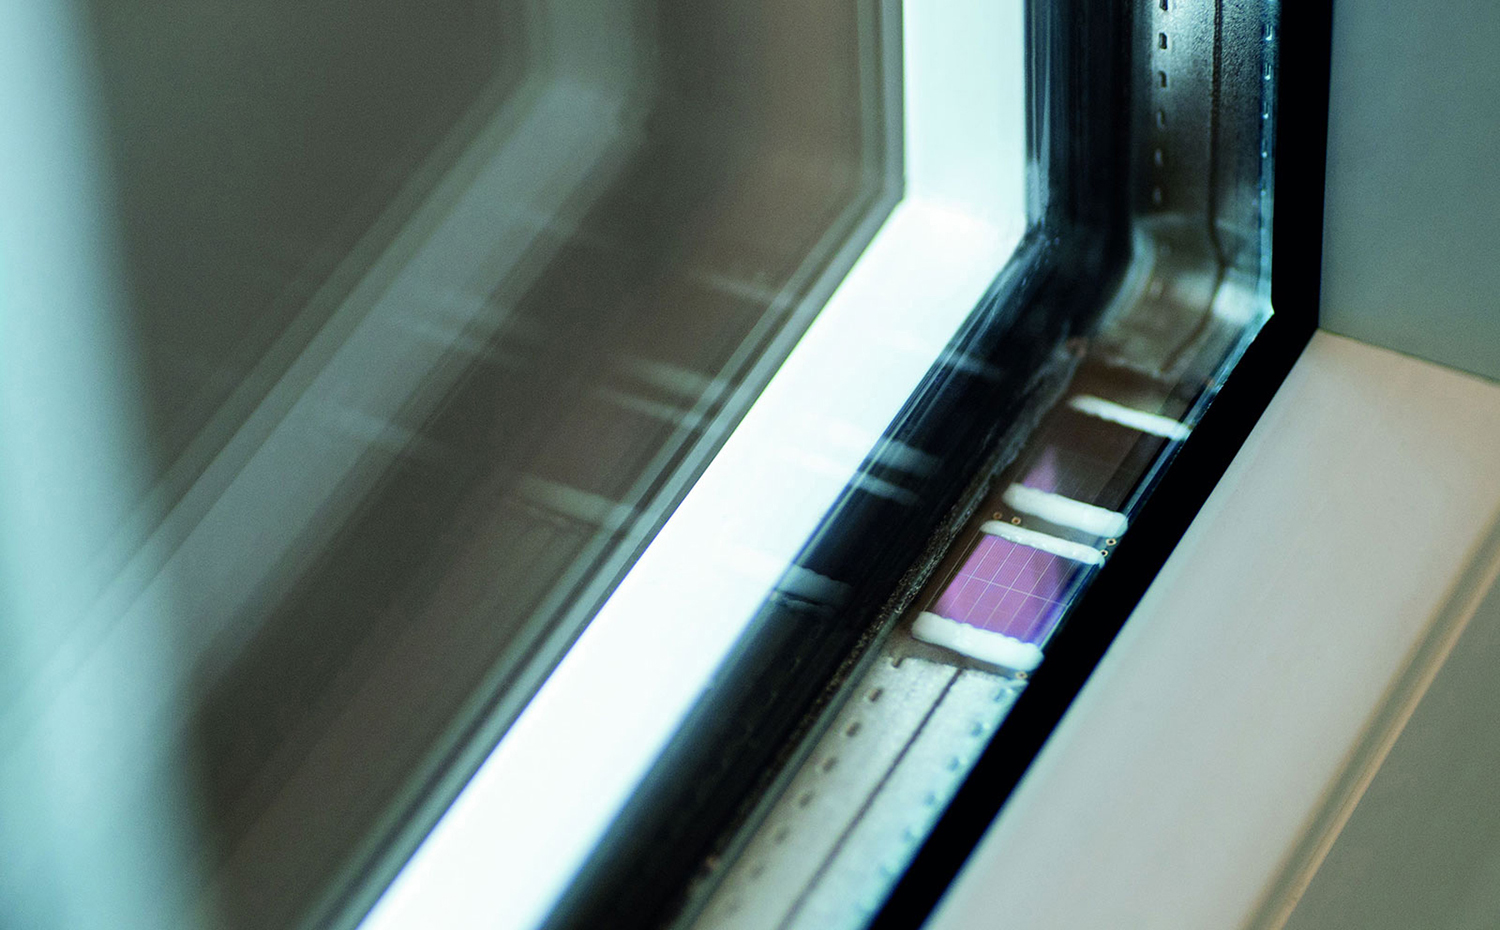 Chip solar para detección de puerta y ventana abierta desarrollado por el Instituto IMS de Duisburg, Alemania